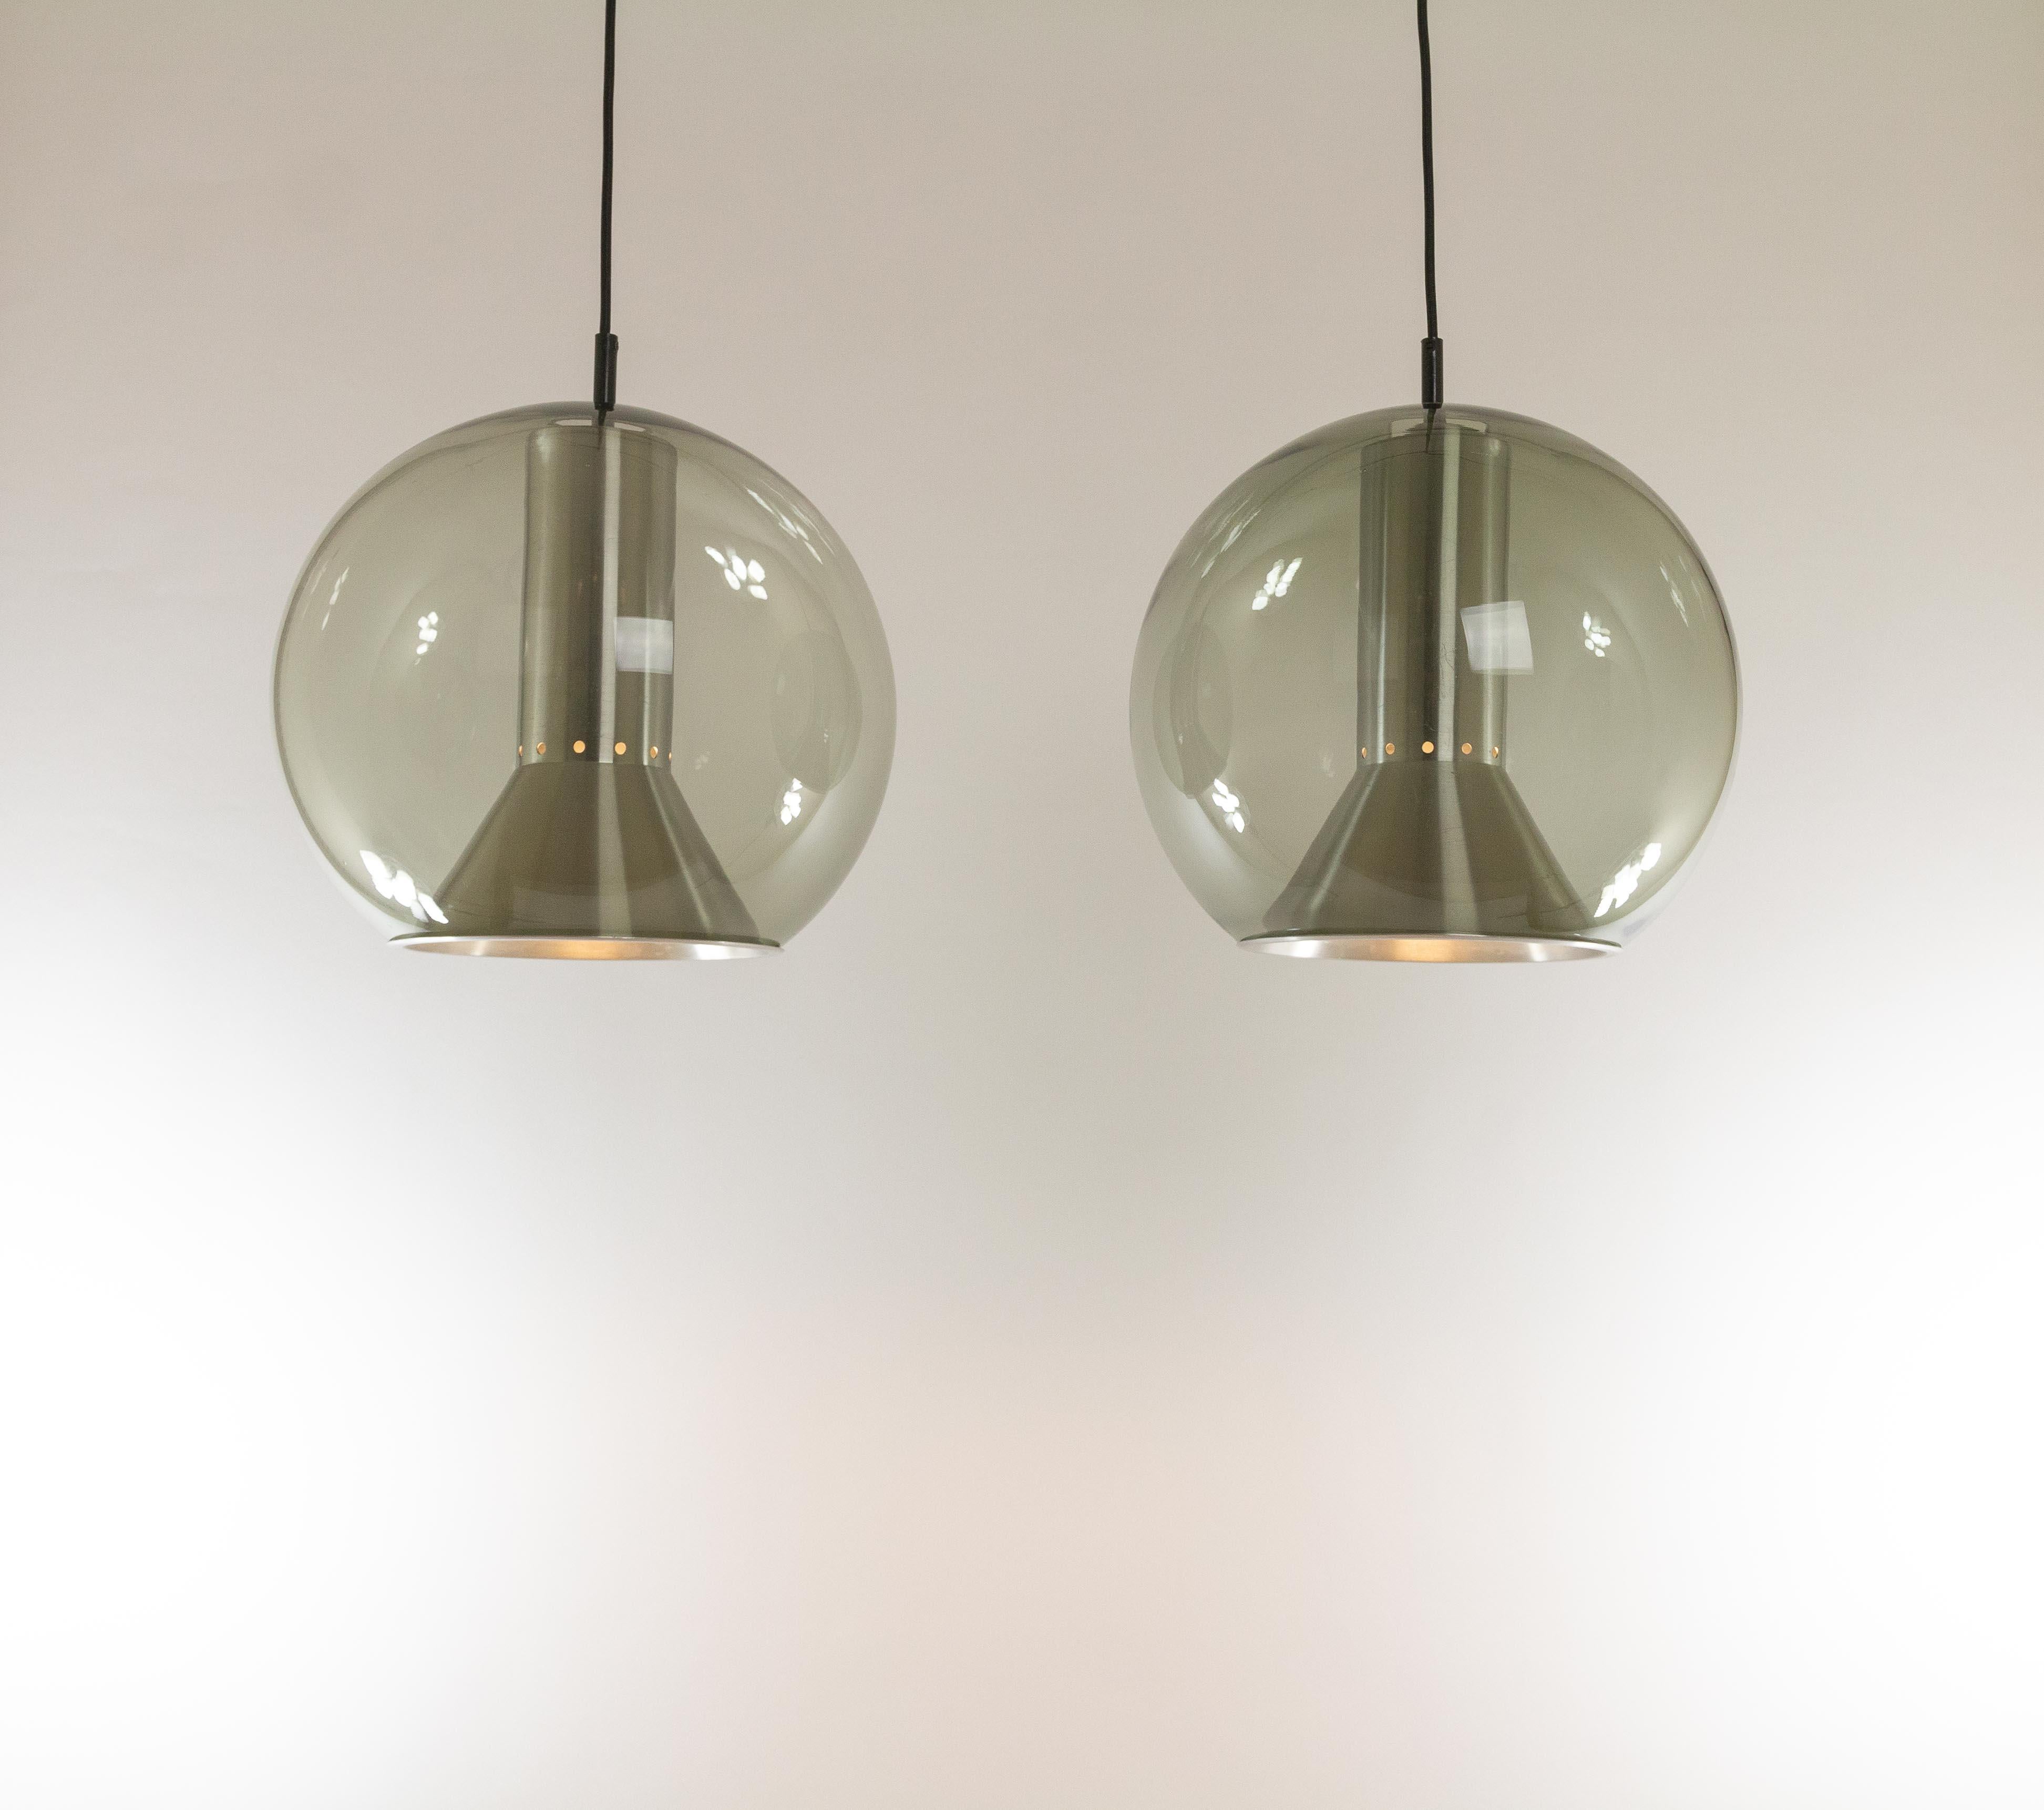 Paire de suspensions Globe de Frank Ligtelijn pour le fabricant de luminaires néerlandais RAAK Amsterdam, années 1970. 

Ces lampes font partie de la série dite Calle, qui comprend toute la gamme des modèles potentiels : lampes de bureau,